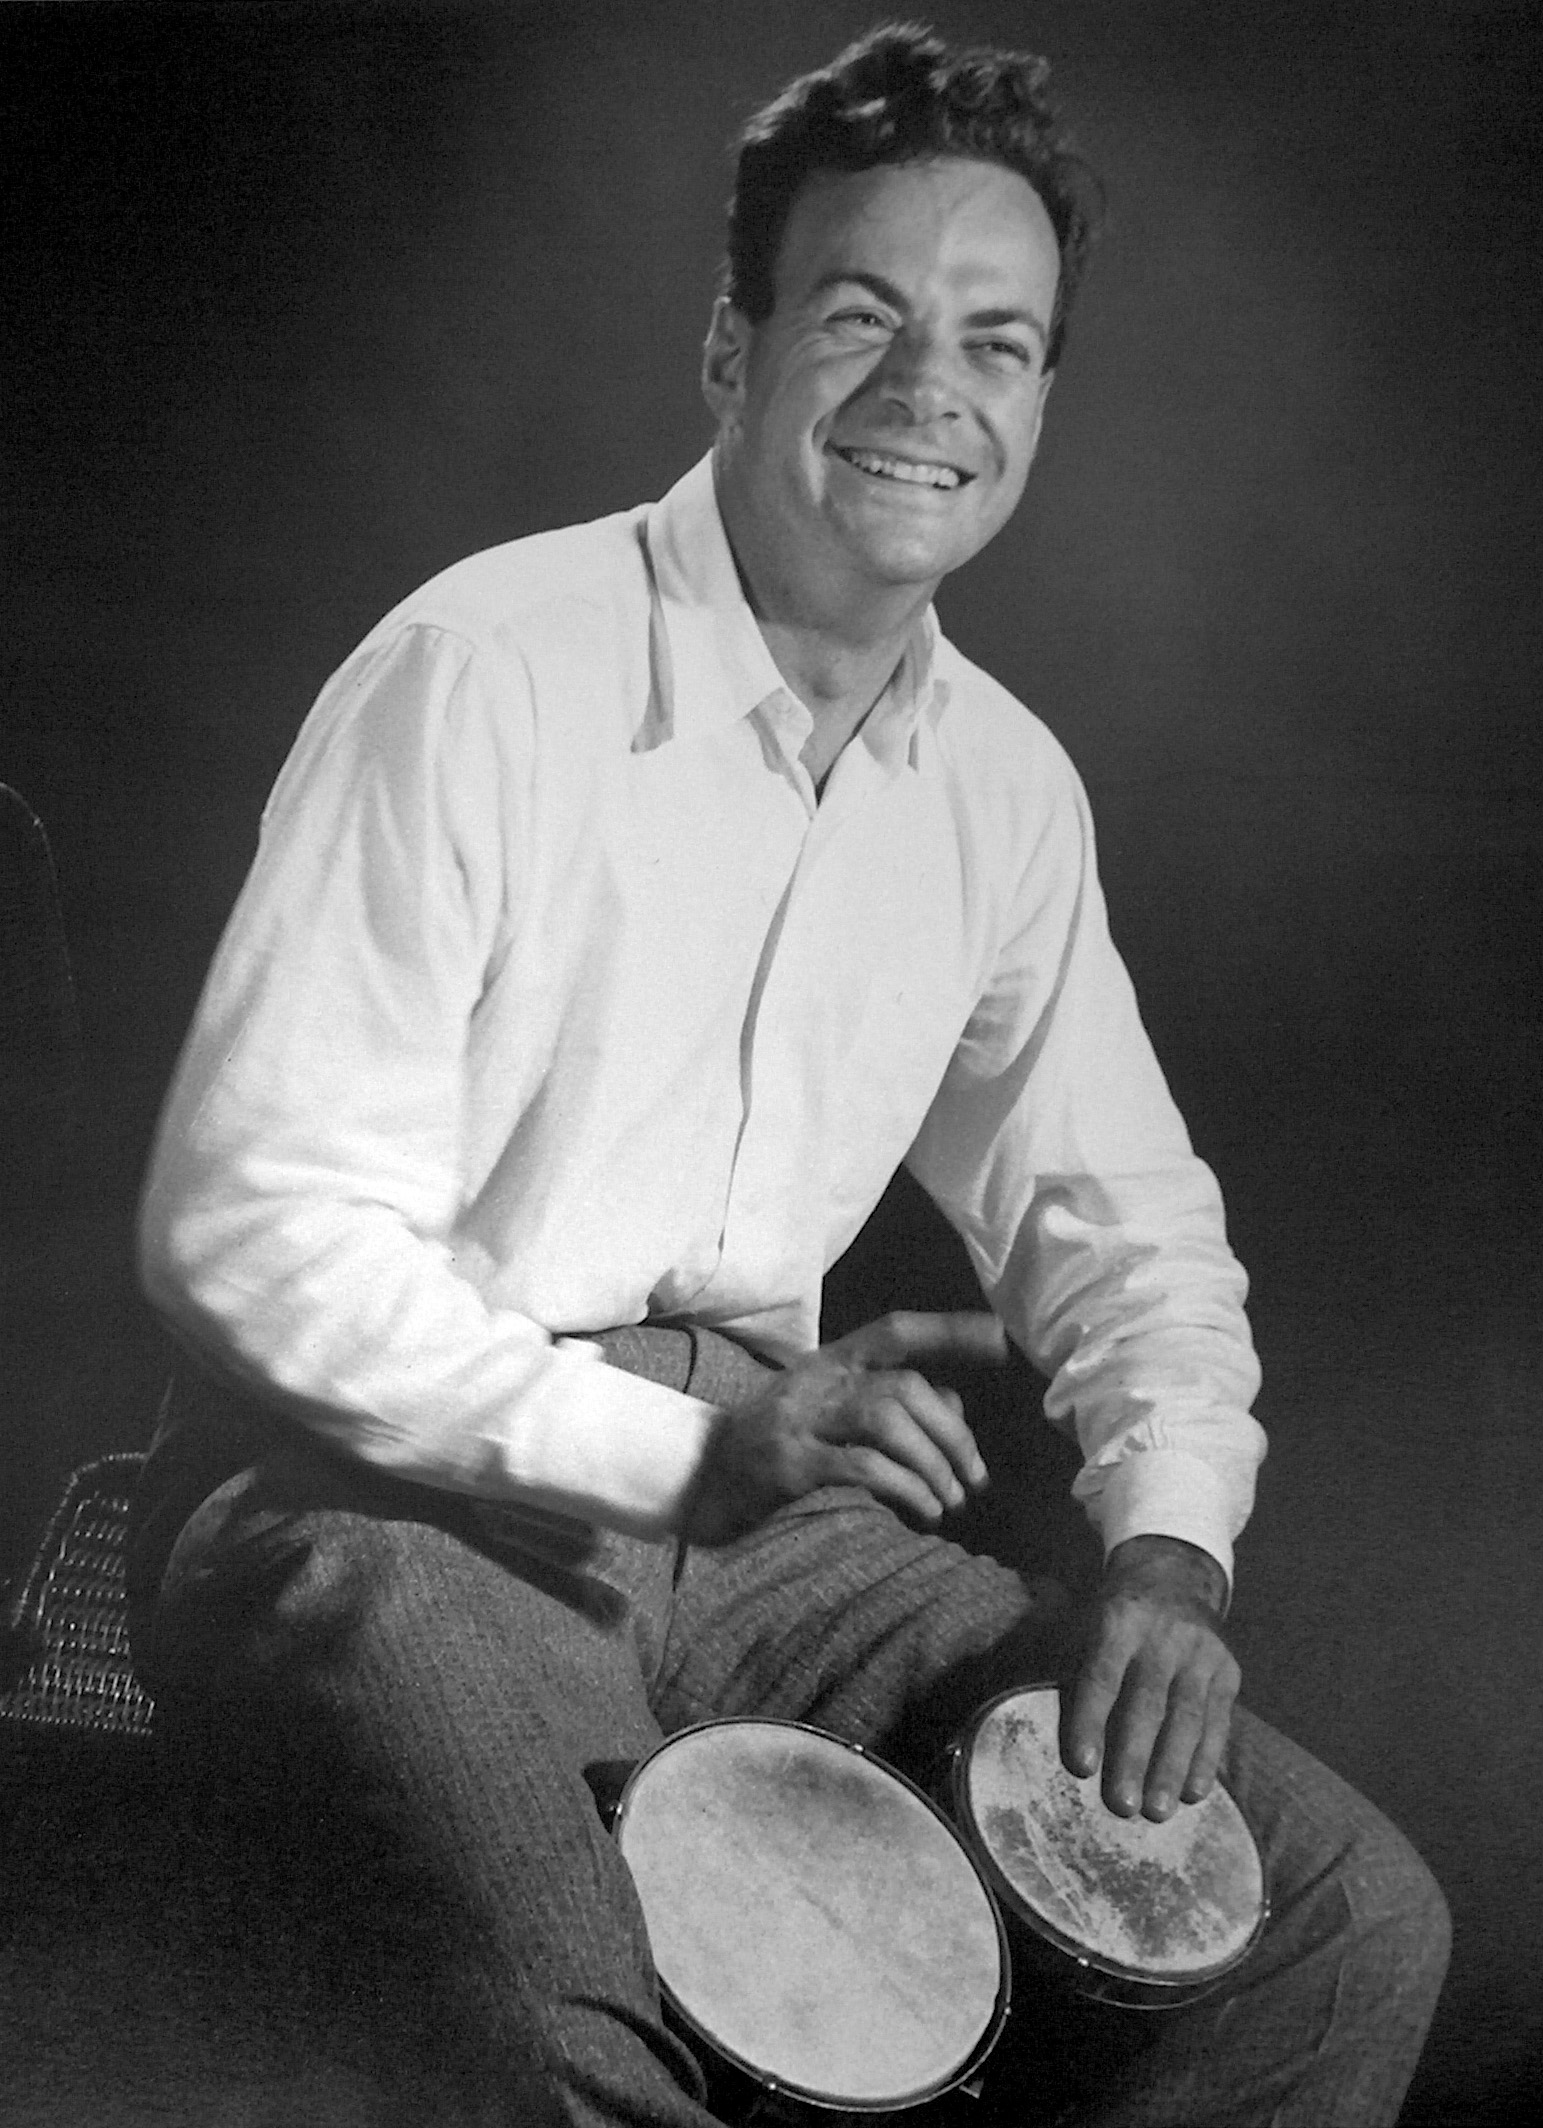 Le prix Nobel de physique Richard Feynman s'est intéressé à la réalisation d'ordinateurs quantiques au début des années 1980. Il est considéré comme l’un des pionniers de ce domaine. © Tom Harvey